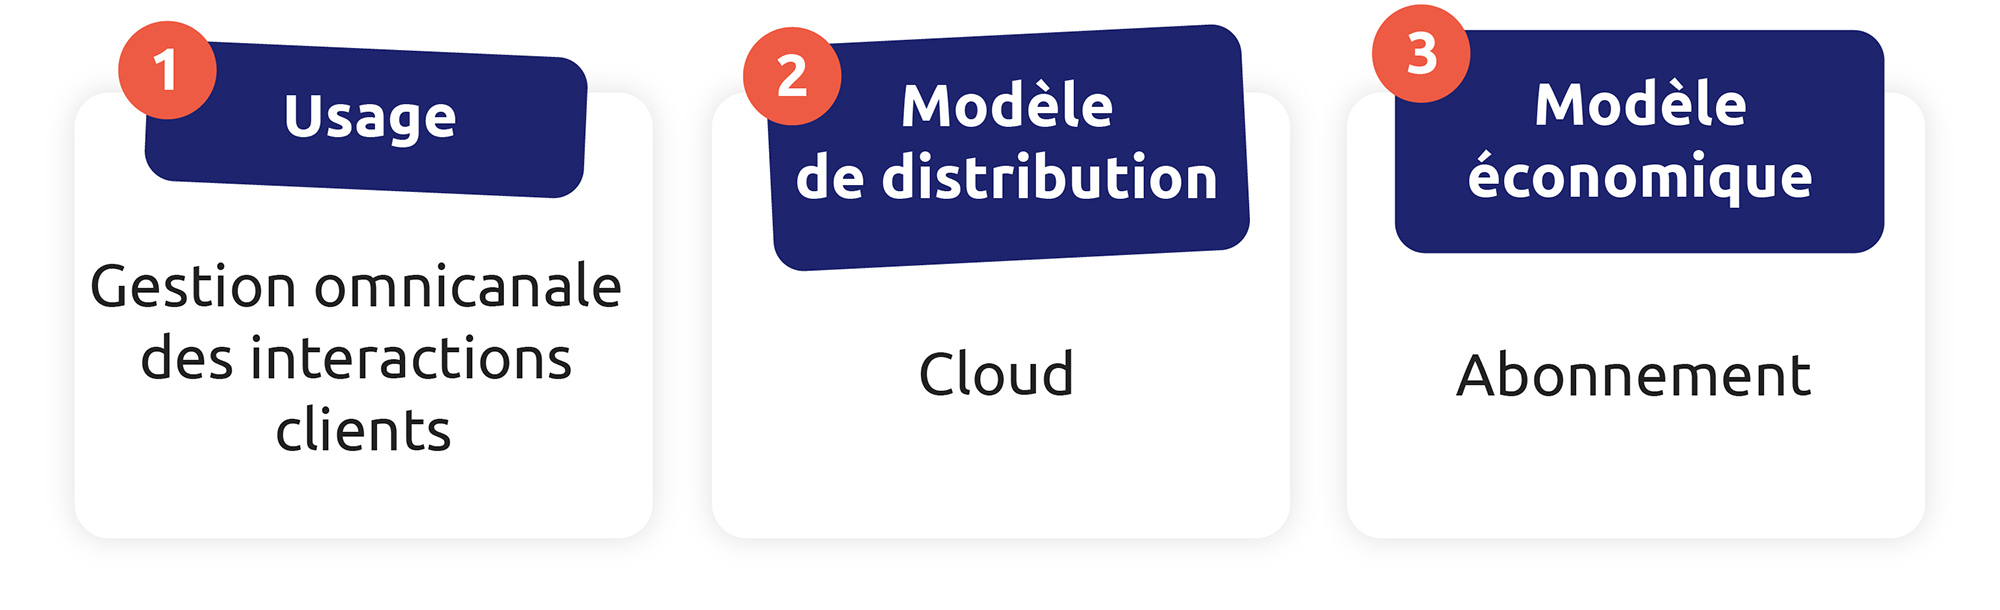 Les trois caractéristiques d’un CCaaS sont : la gestion omnicanale, une distribution sur cloud et un système d'abonnement